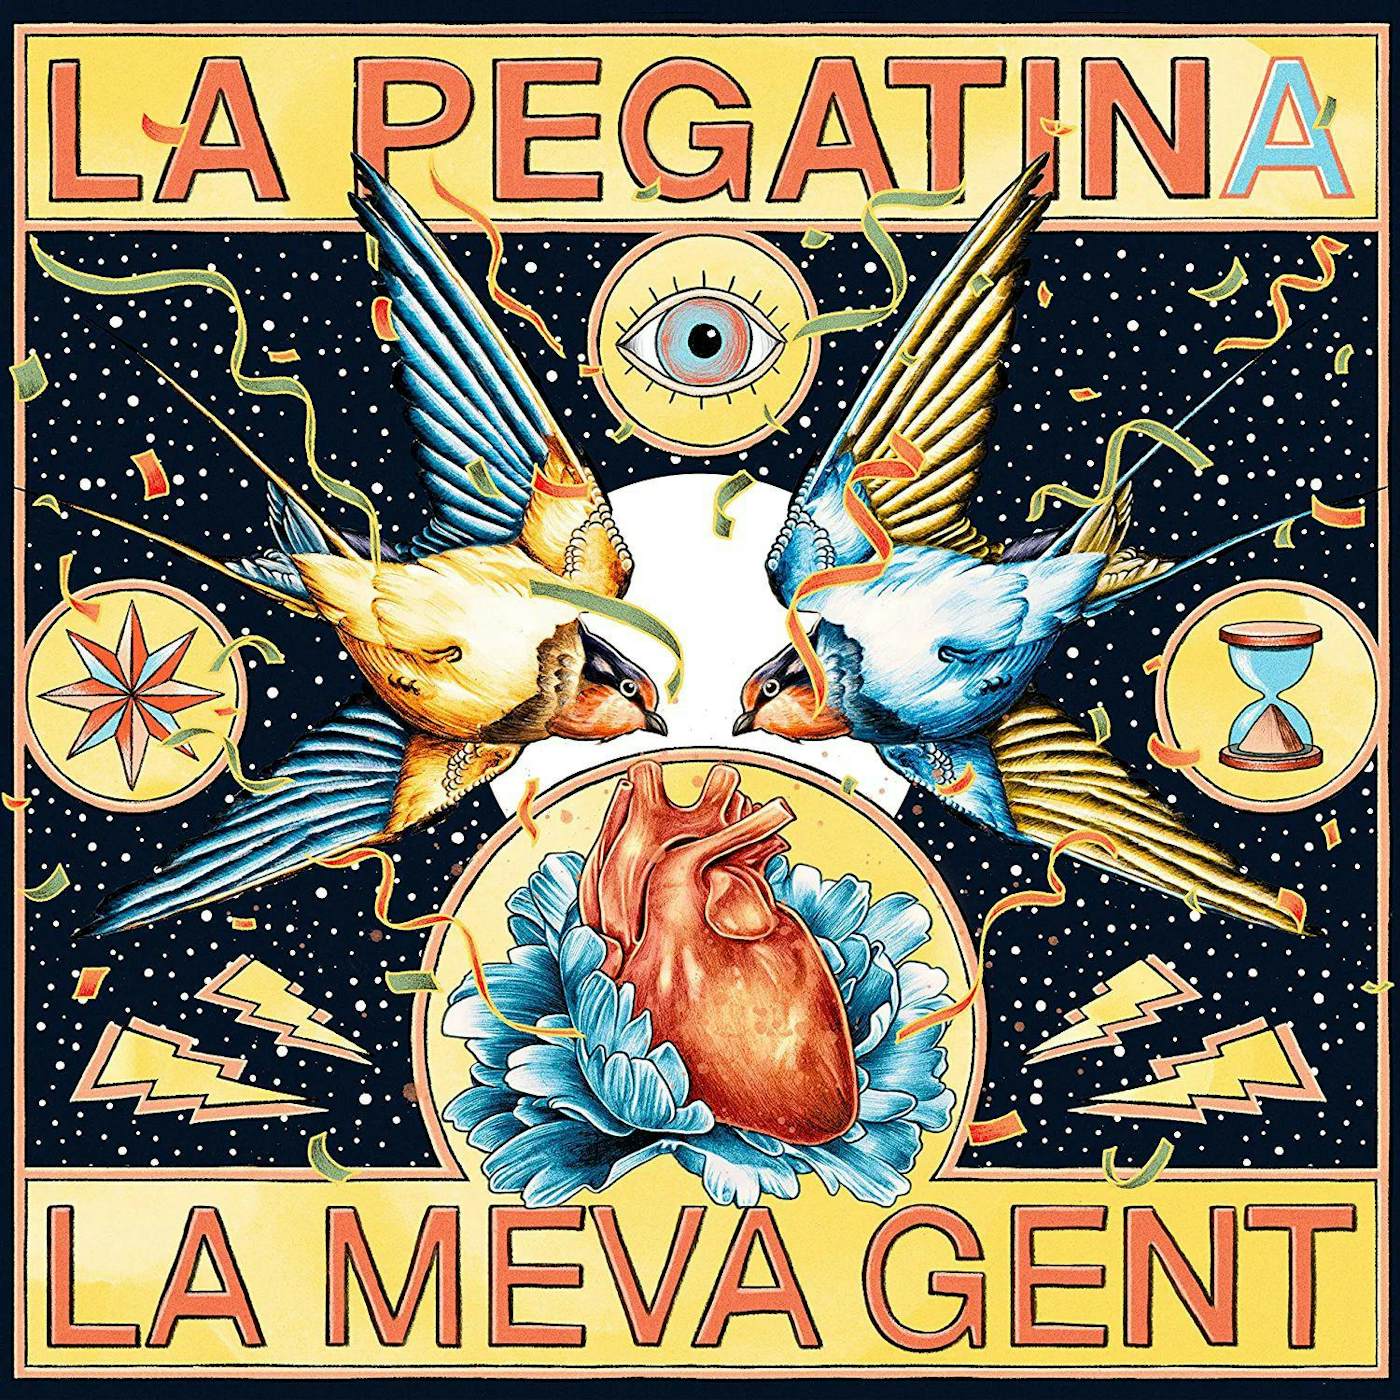 La Pegatina La Meva Gent Vinyl Record